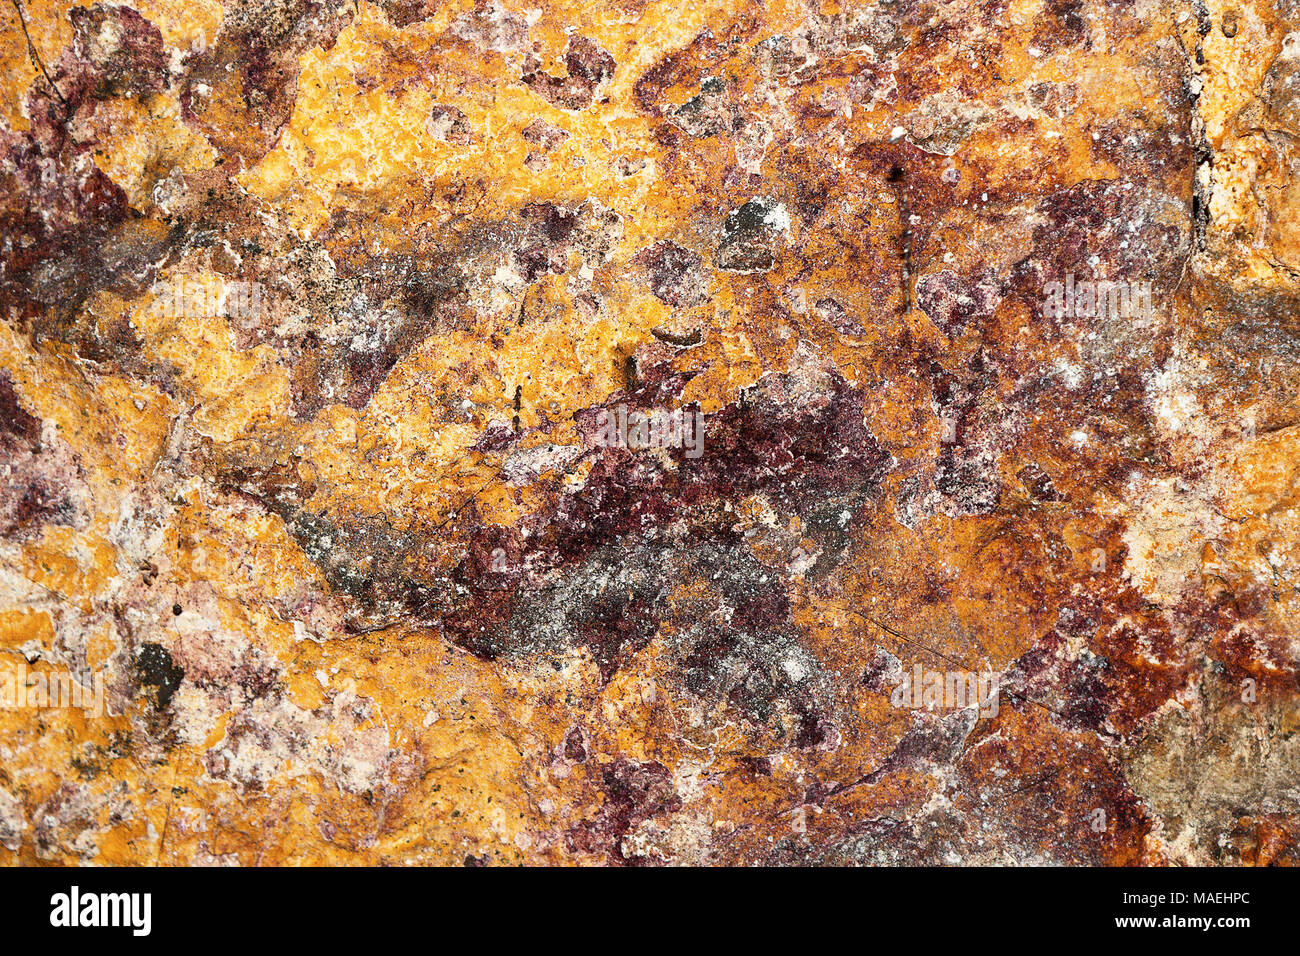 Texture colorate della vecchia cantina muro di pietra; questo schema è reso bt collonies di funghi, batteri e muffa Foto Stock